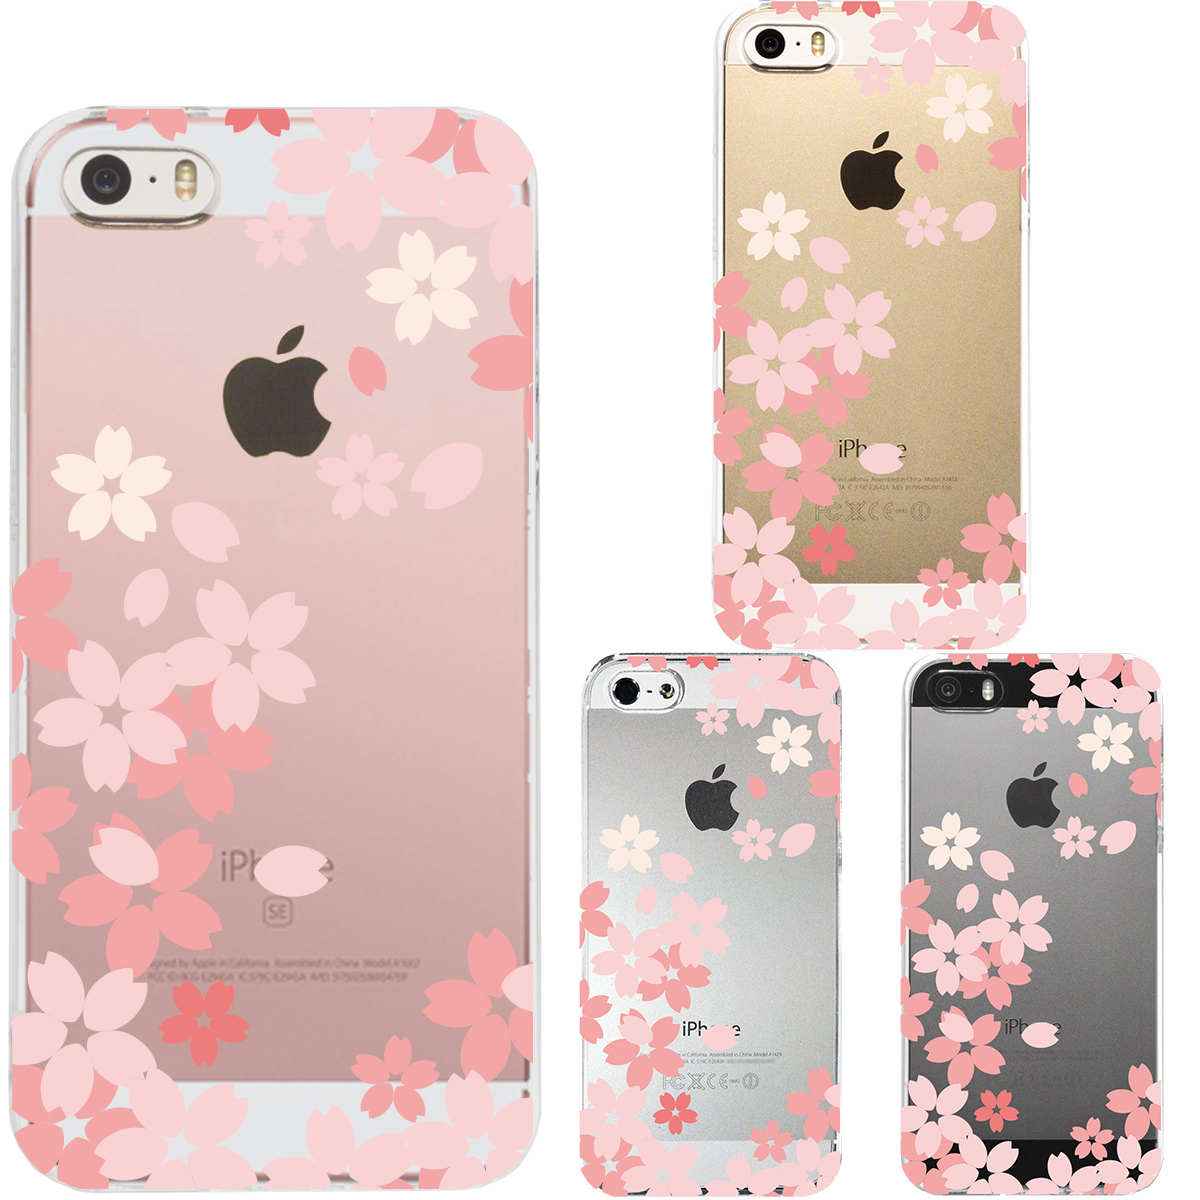 iPhone SE 5S/5 対応 アイフォン ハード クリア ケース カバー シェル ジャケット 花柄 さくら